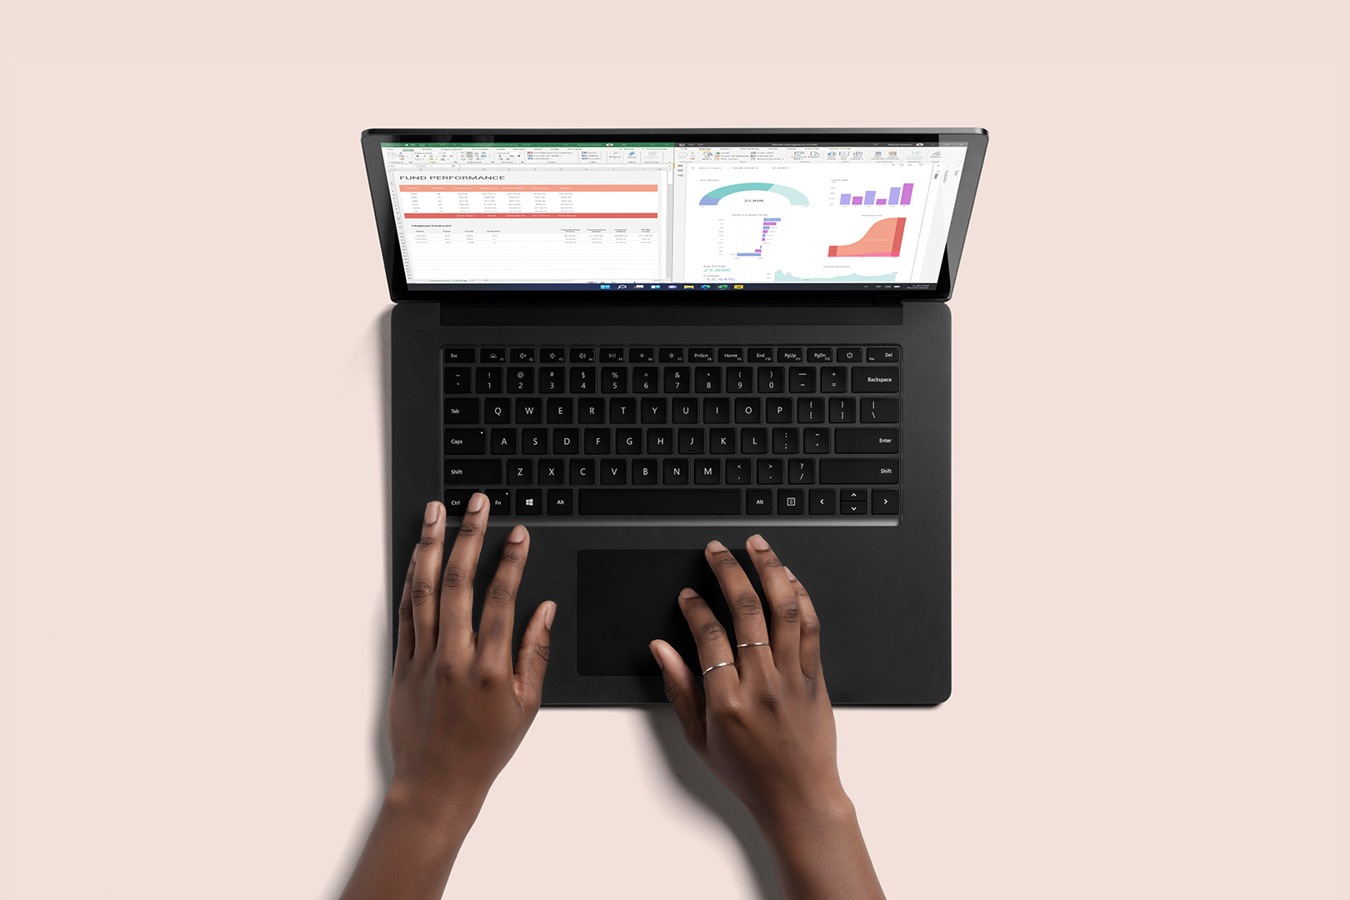 典雅黑颜色的 Surface Laptop 4 俯视图，两只手在键盘上打字
